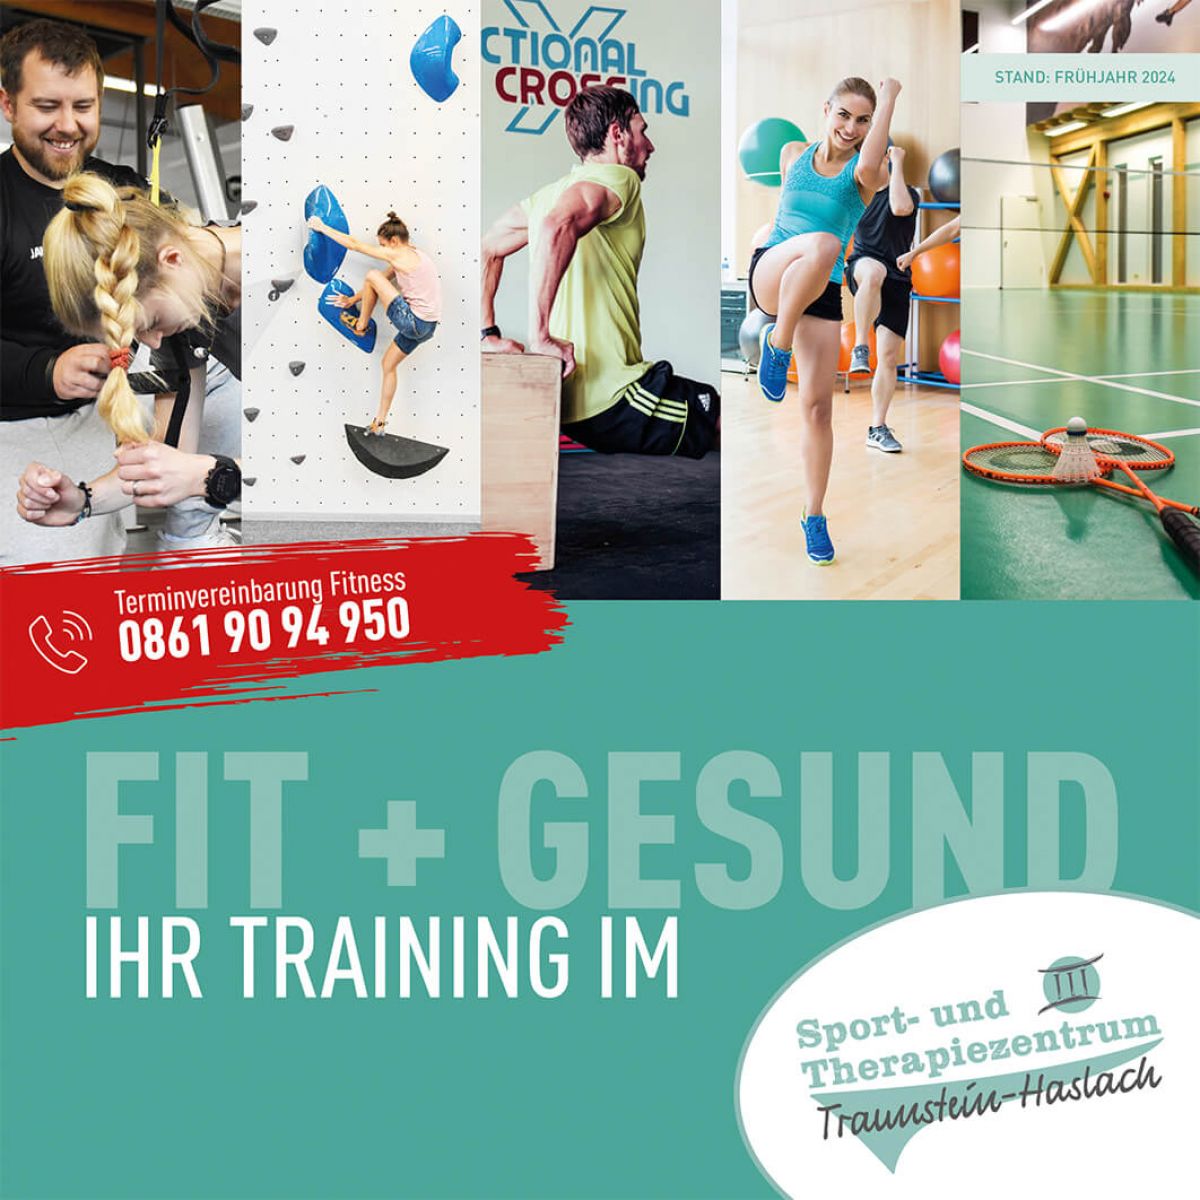 Titelbild der Fitness-Broschüre vom Sport- und therapiezentrum Traunstein-Haslach